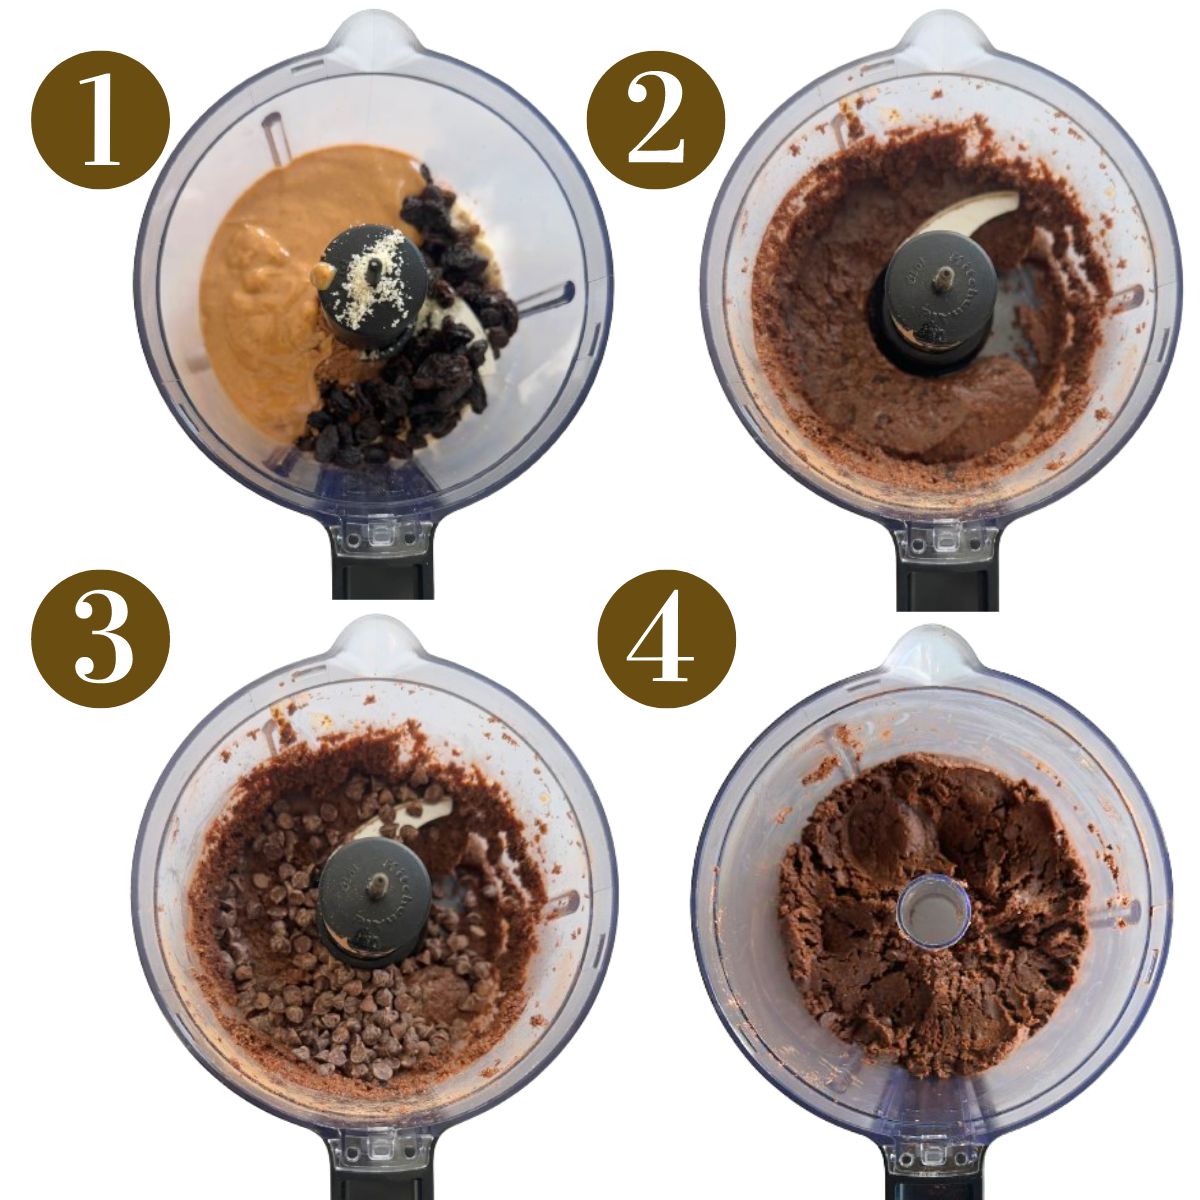 Steps to make chocolate balls.